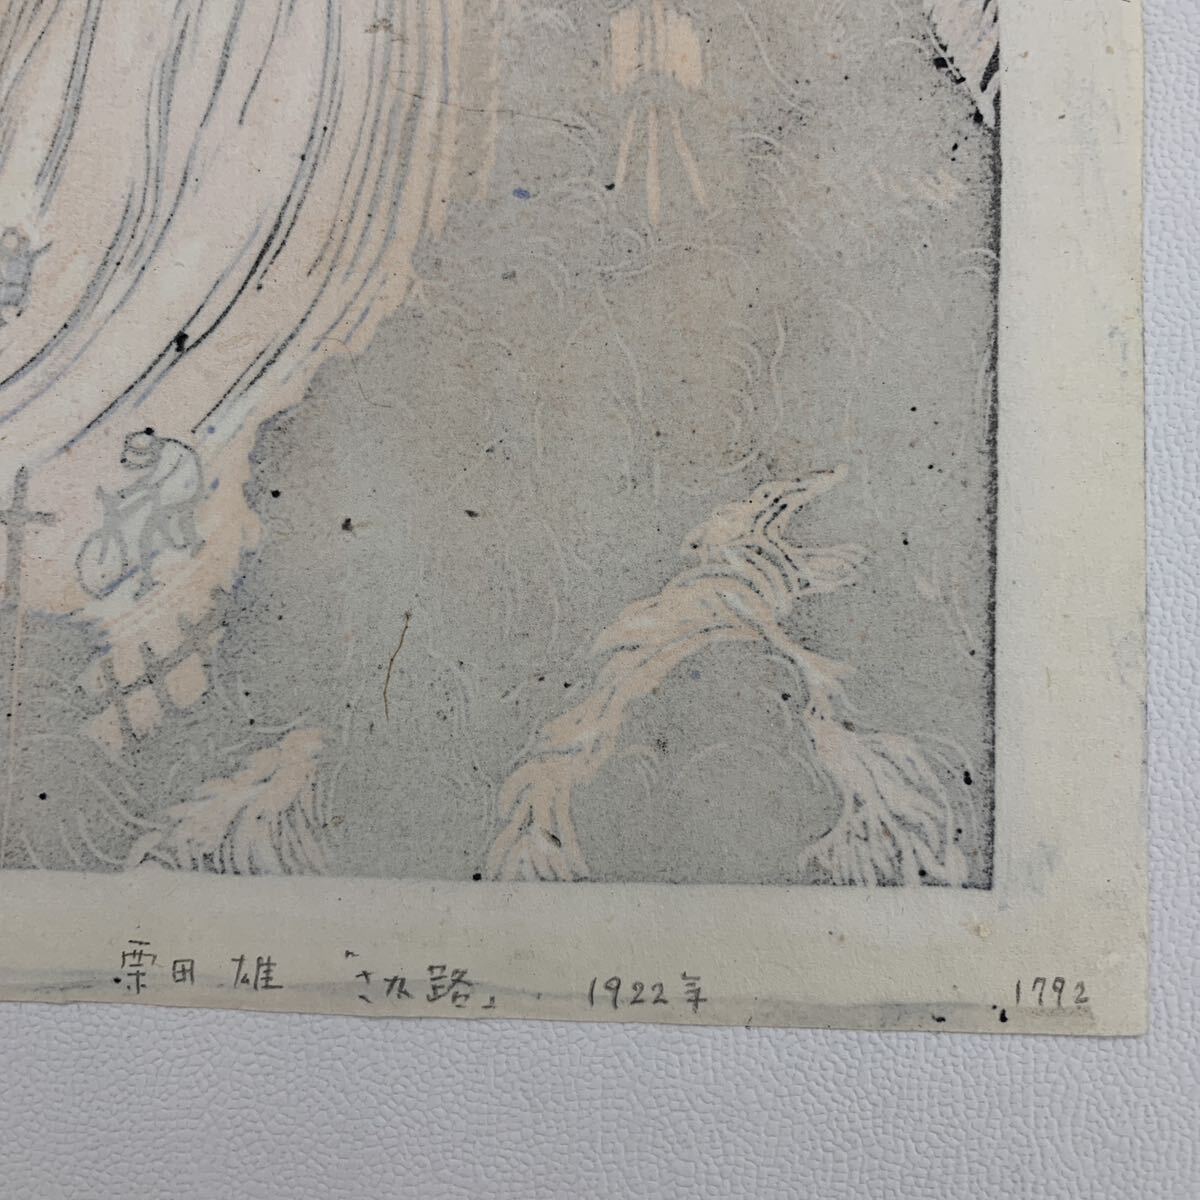 栗田雄『さか路』1922年大正11年作　詩情溢れる夕景　創作版画の傑作　多くの美術館に収蔵されています。貴重。【真作】_画像4